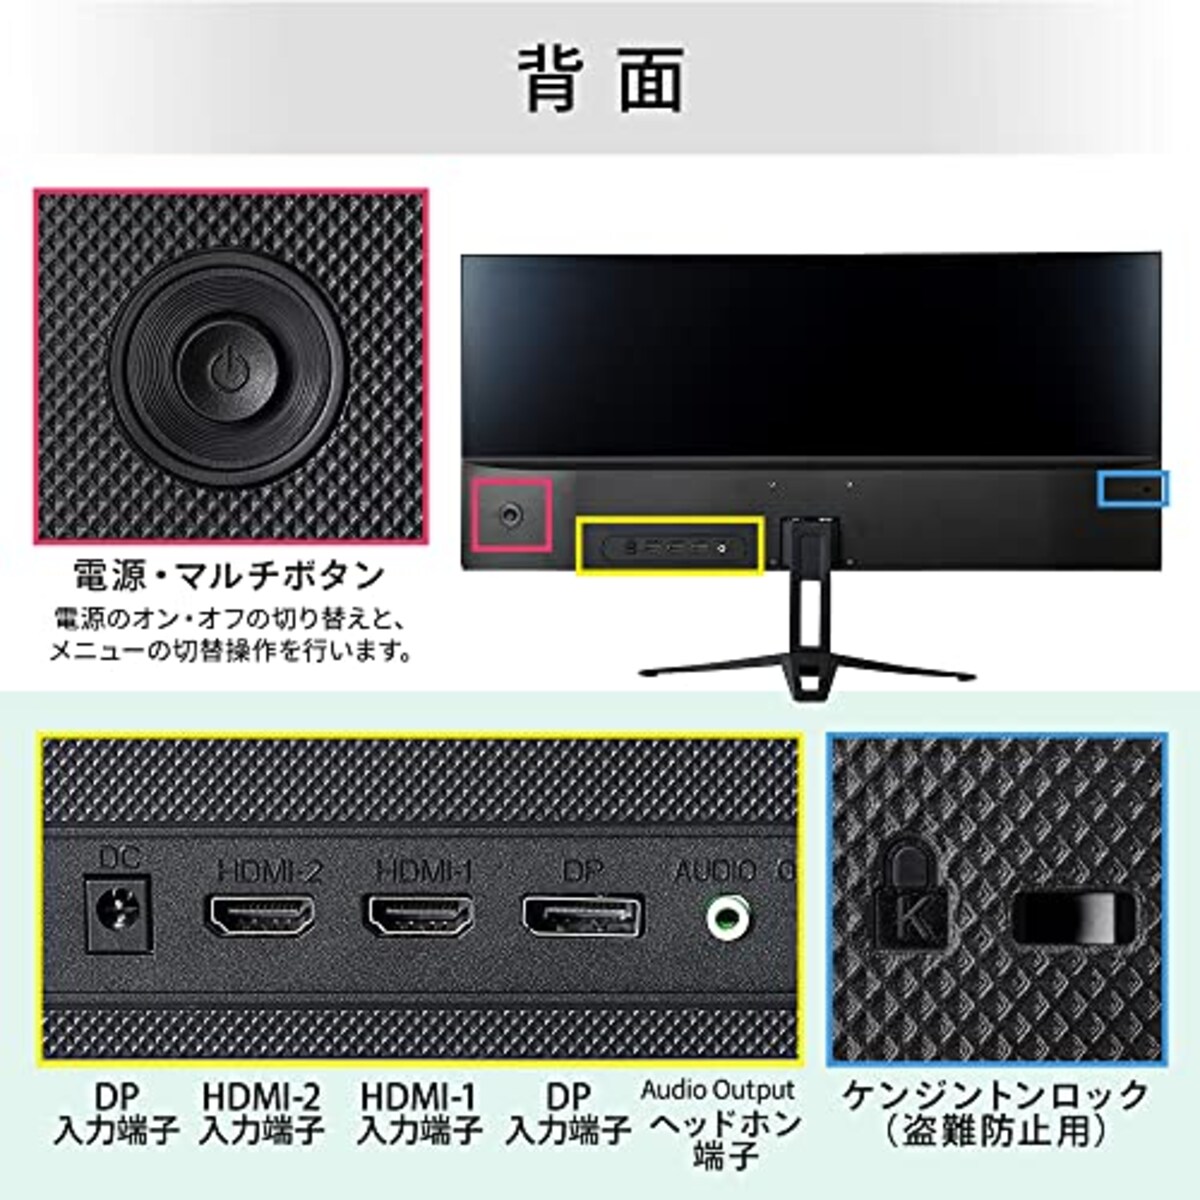 アイリスオーヤマ 液晶モニター 27インチ 液晶ディスプレイ HDMI 在宅勤務